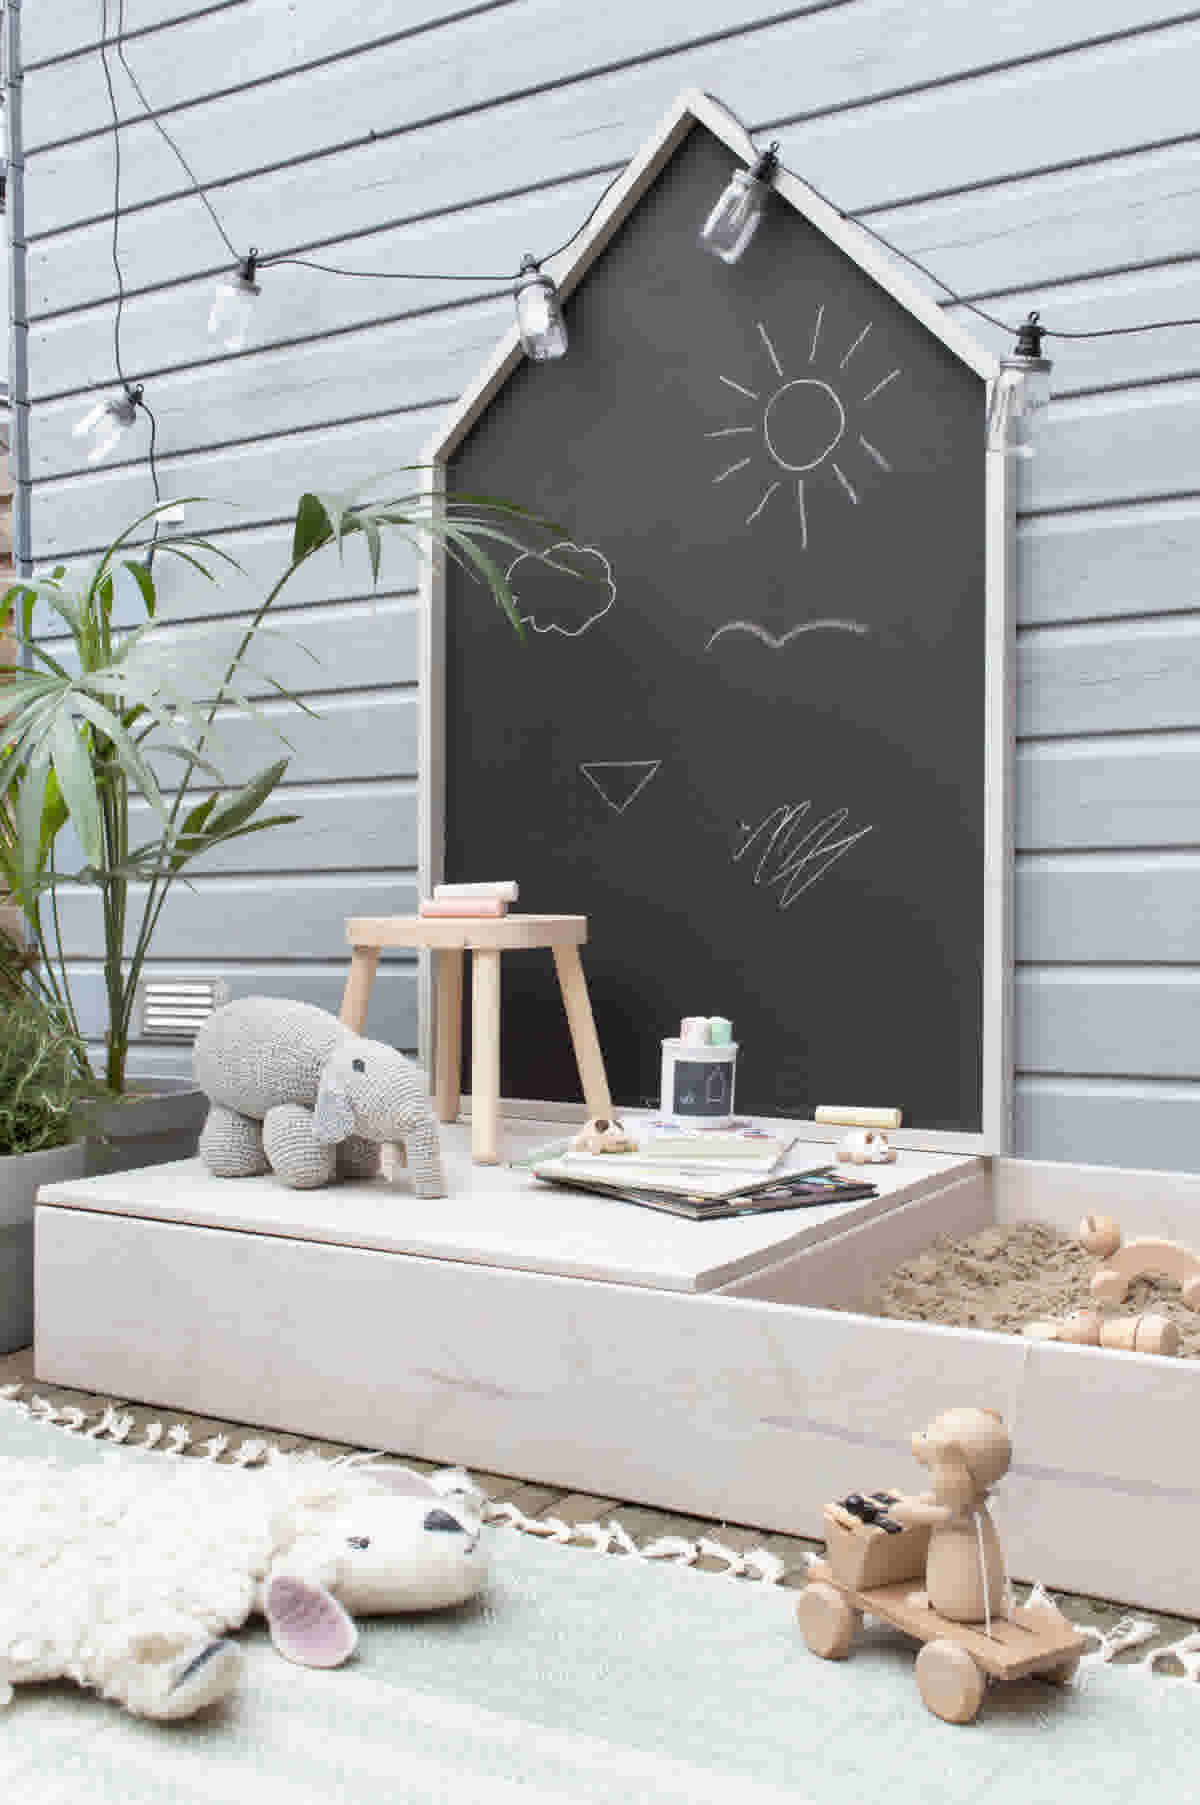 speelhuisje van krijtbord met zandbak voor een kindvriendelijke tuin